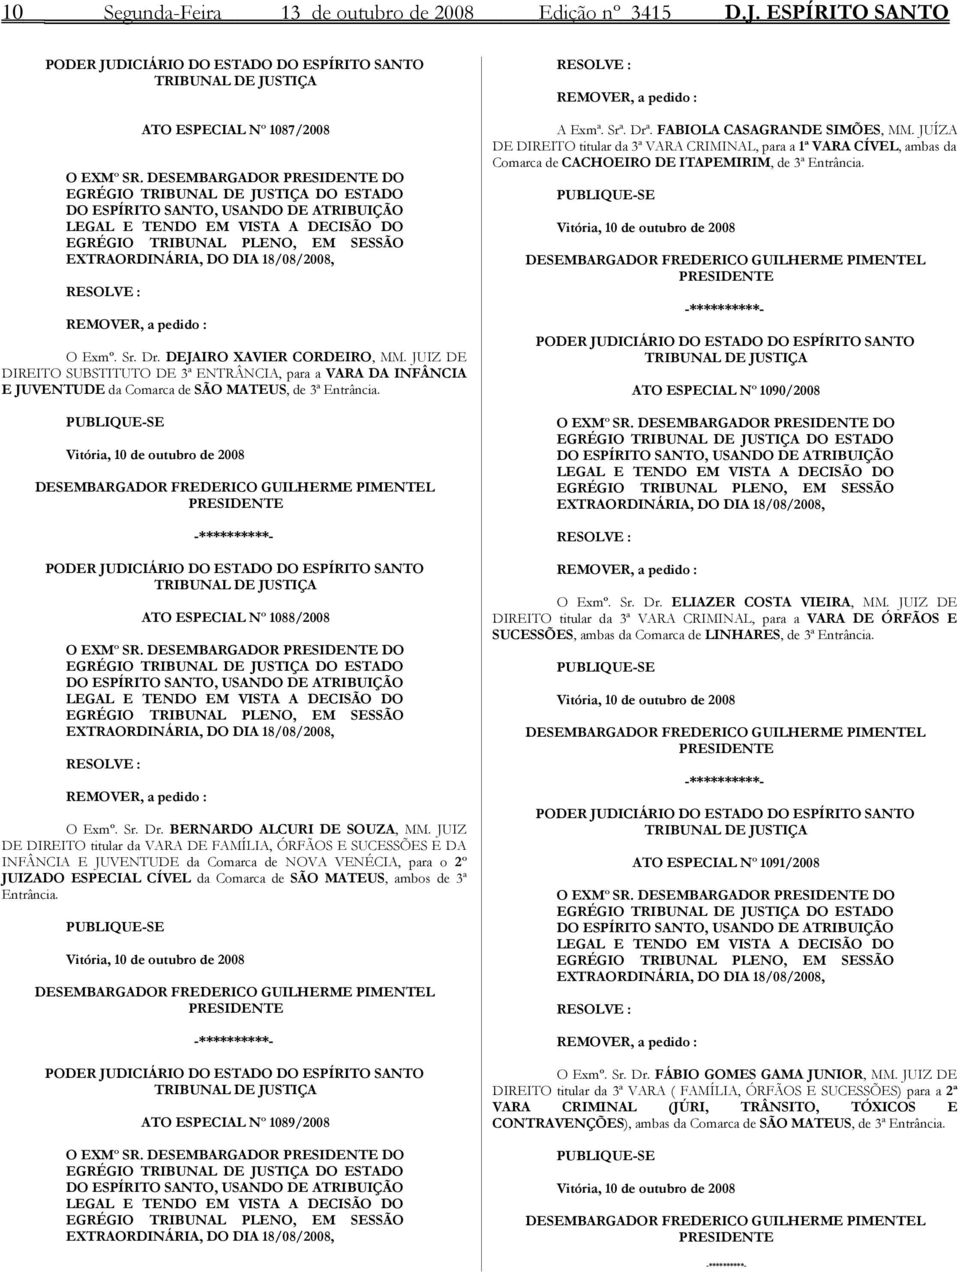 18/08/2008, RESOLVE : REMOVER, a pedido : O Exmº. Sr. Dr. DEJAIRO XAVIER CORDEIRO, MM.